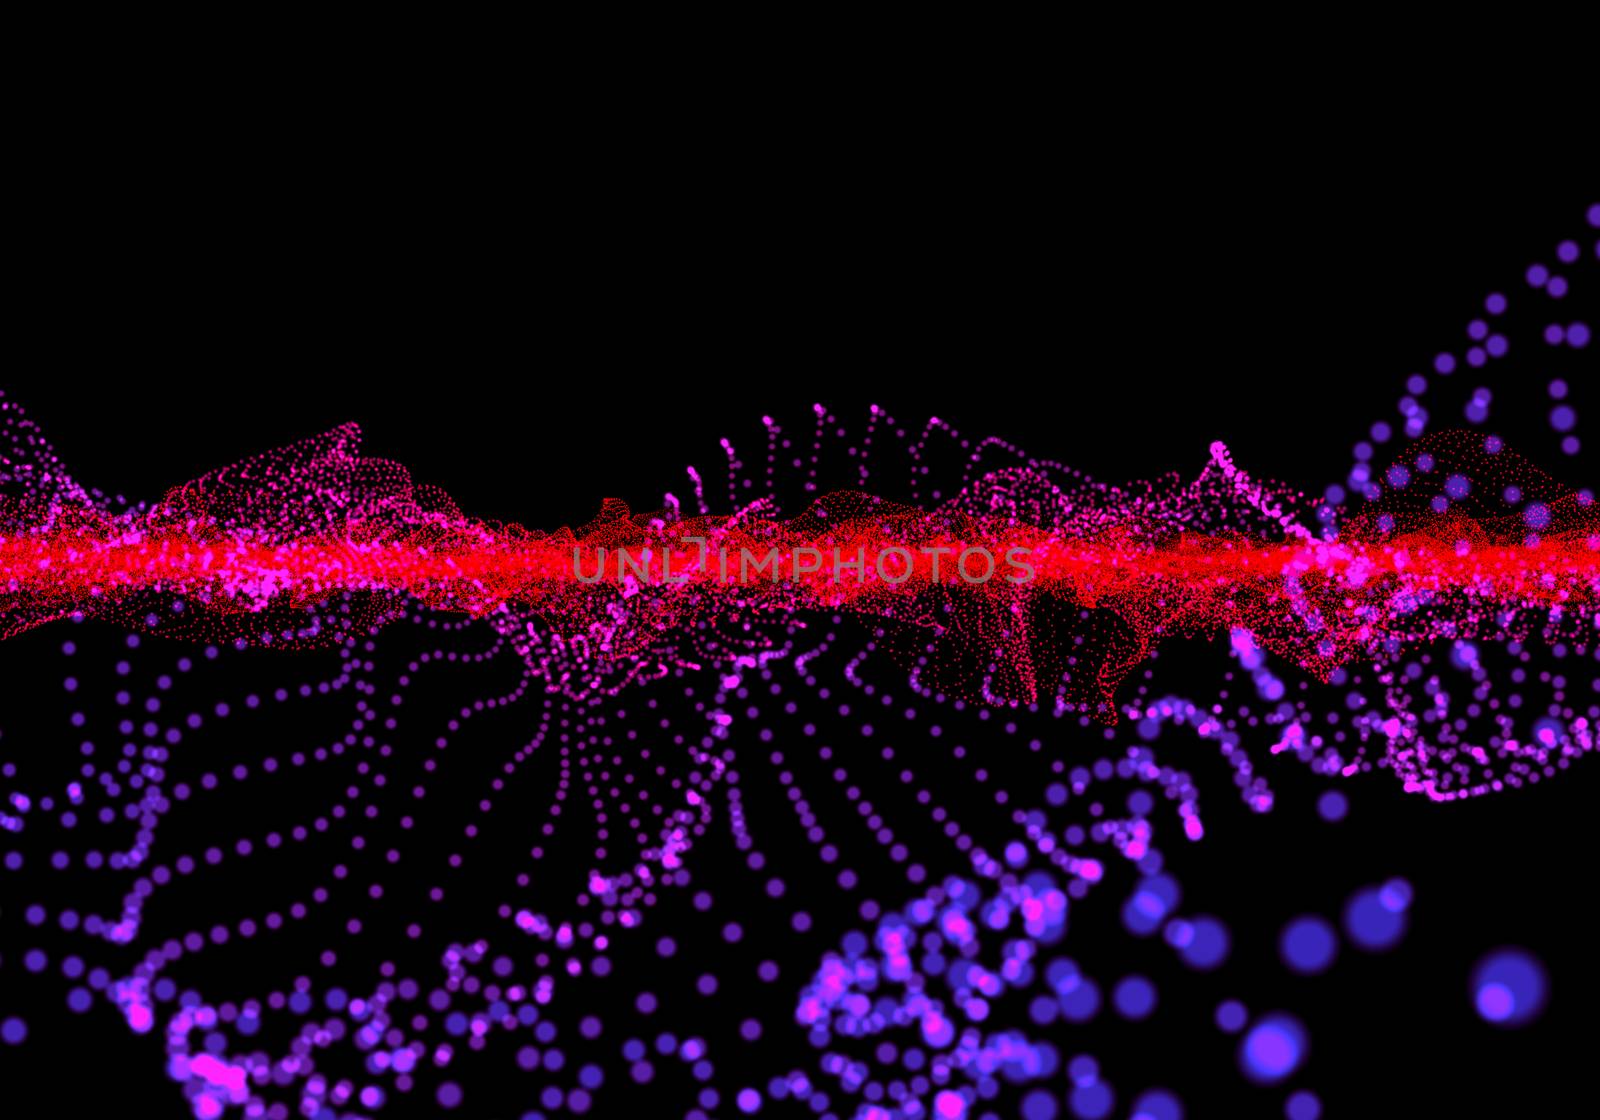 Digital fractal sound wave by clusterx